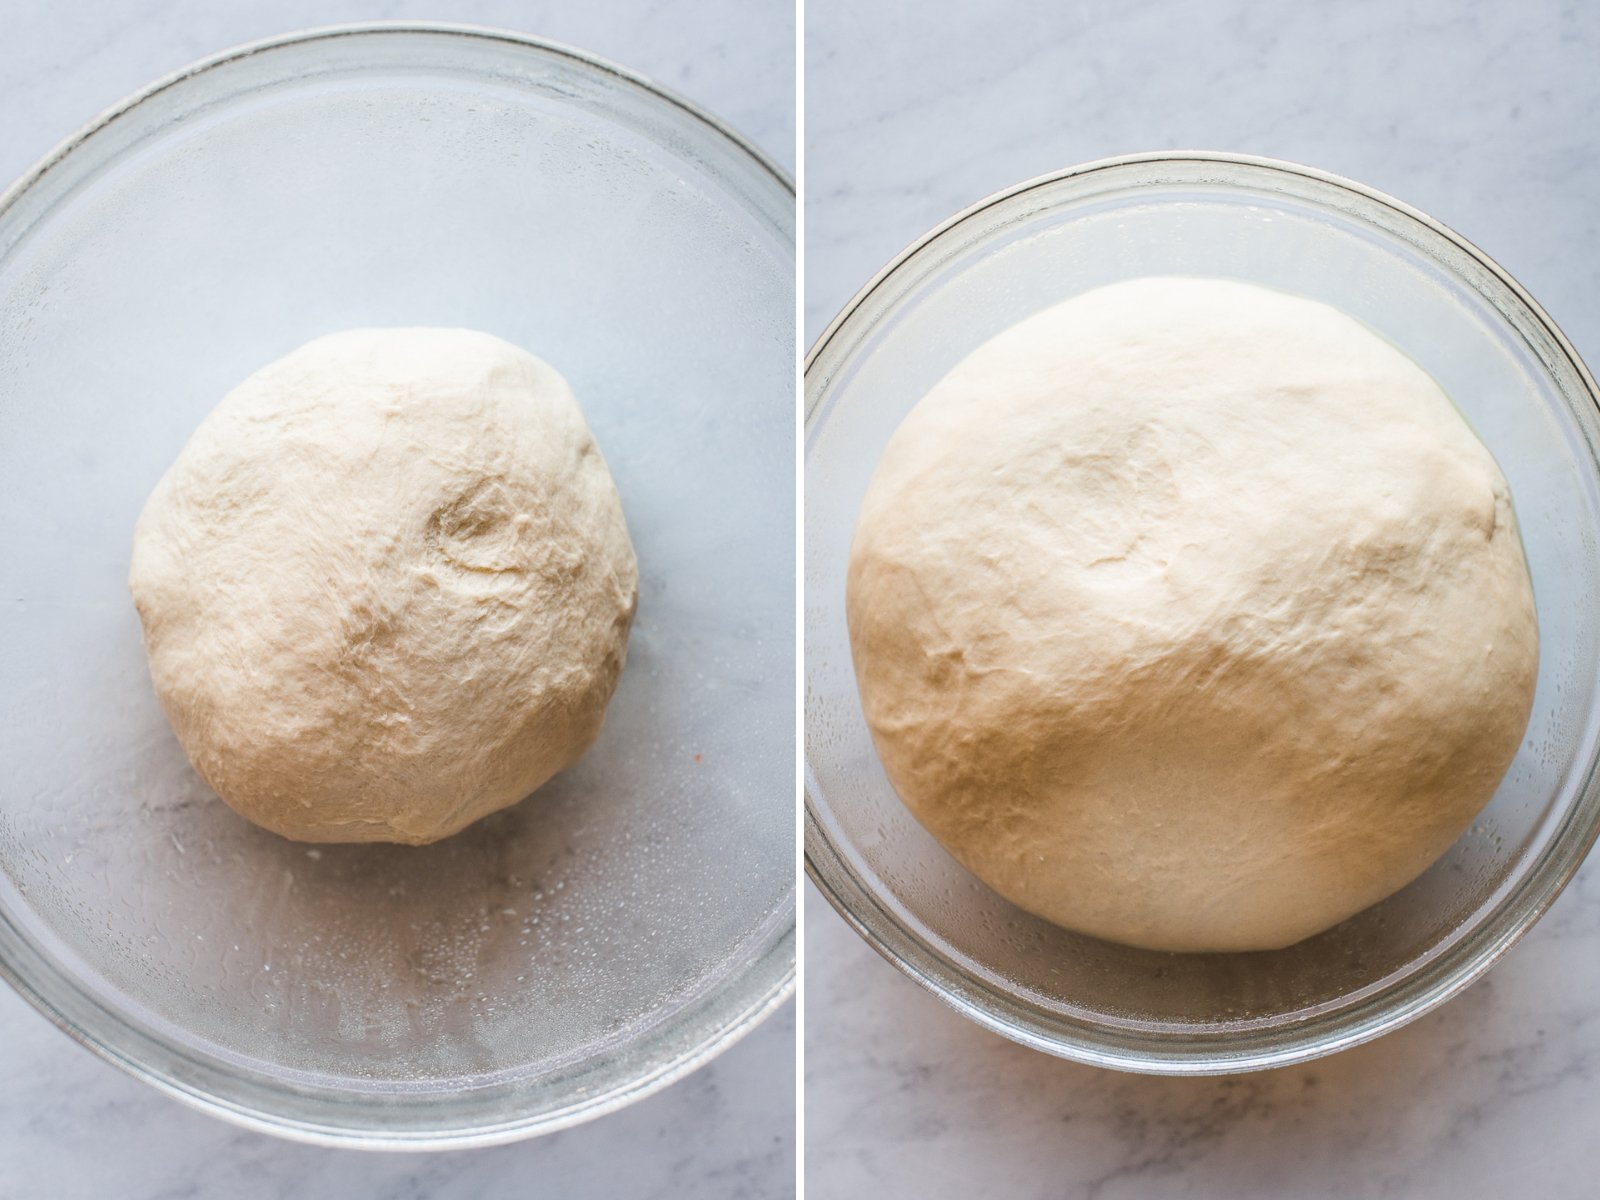 Bolillo bread dough in a large bowl rising.